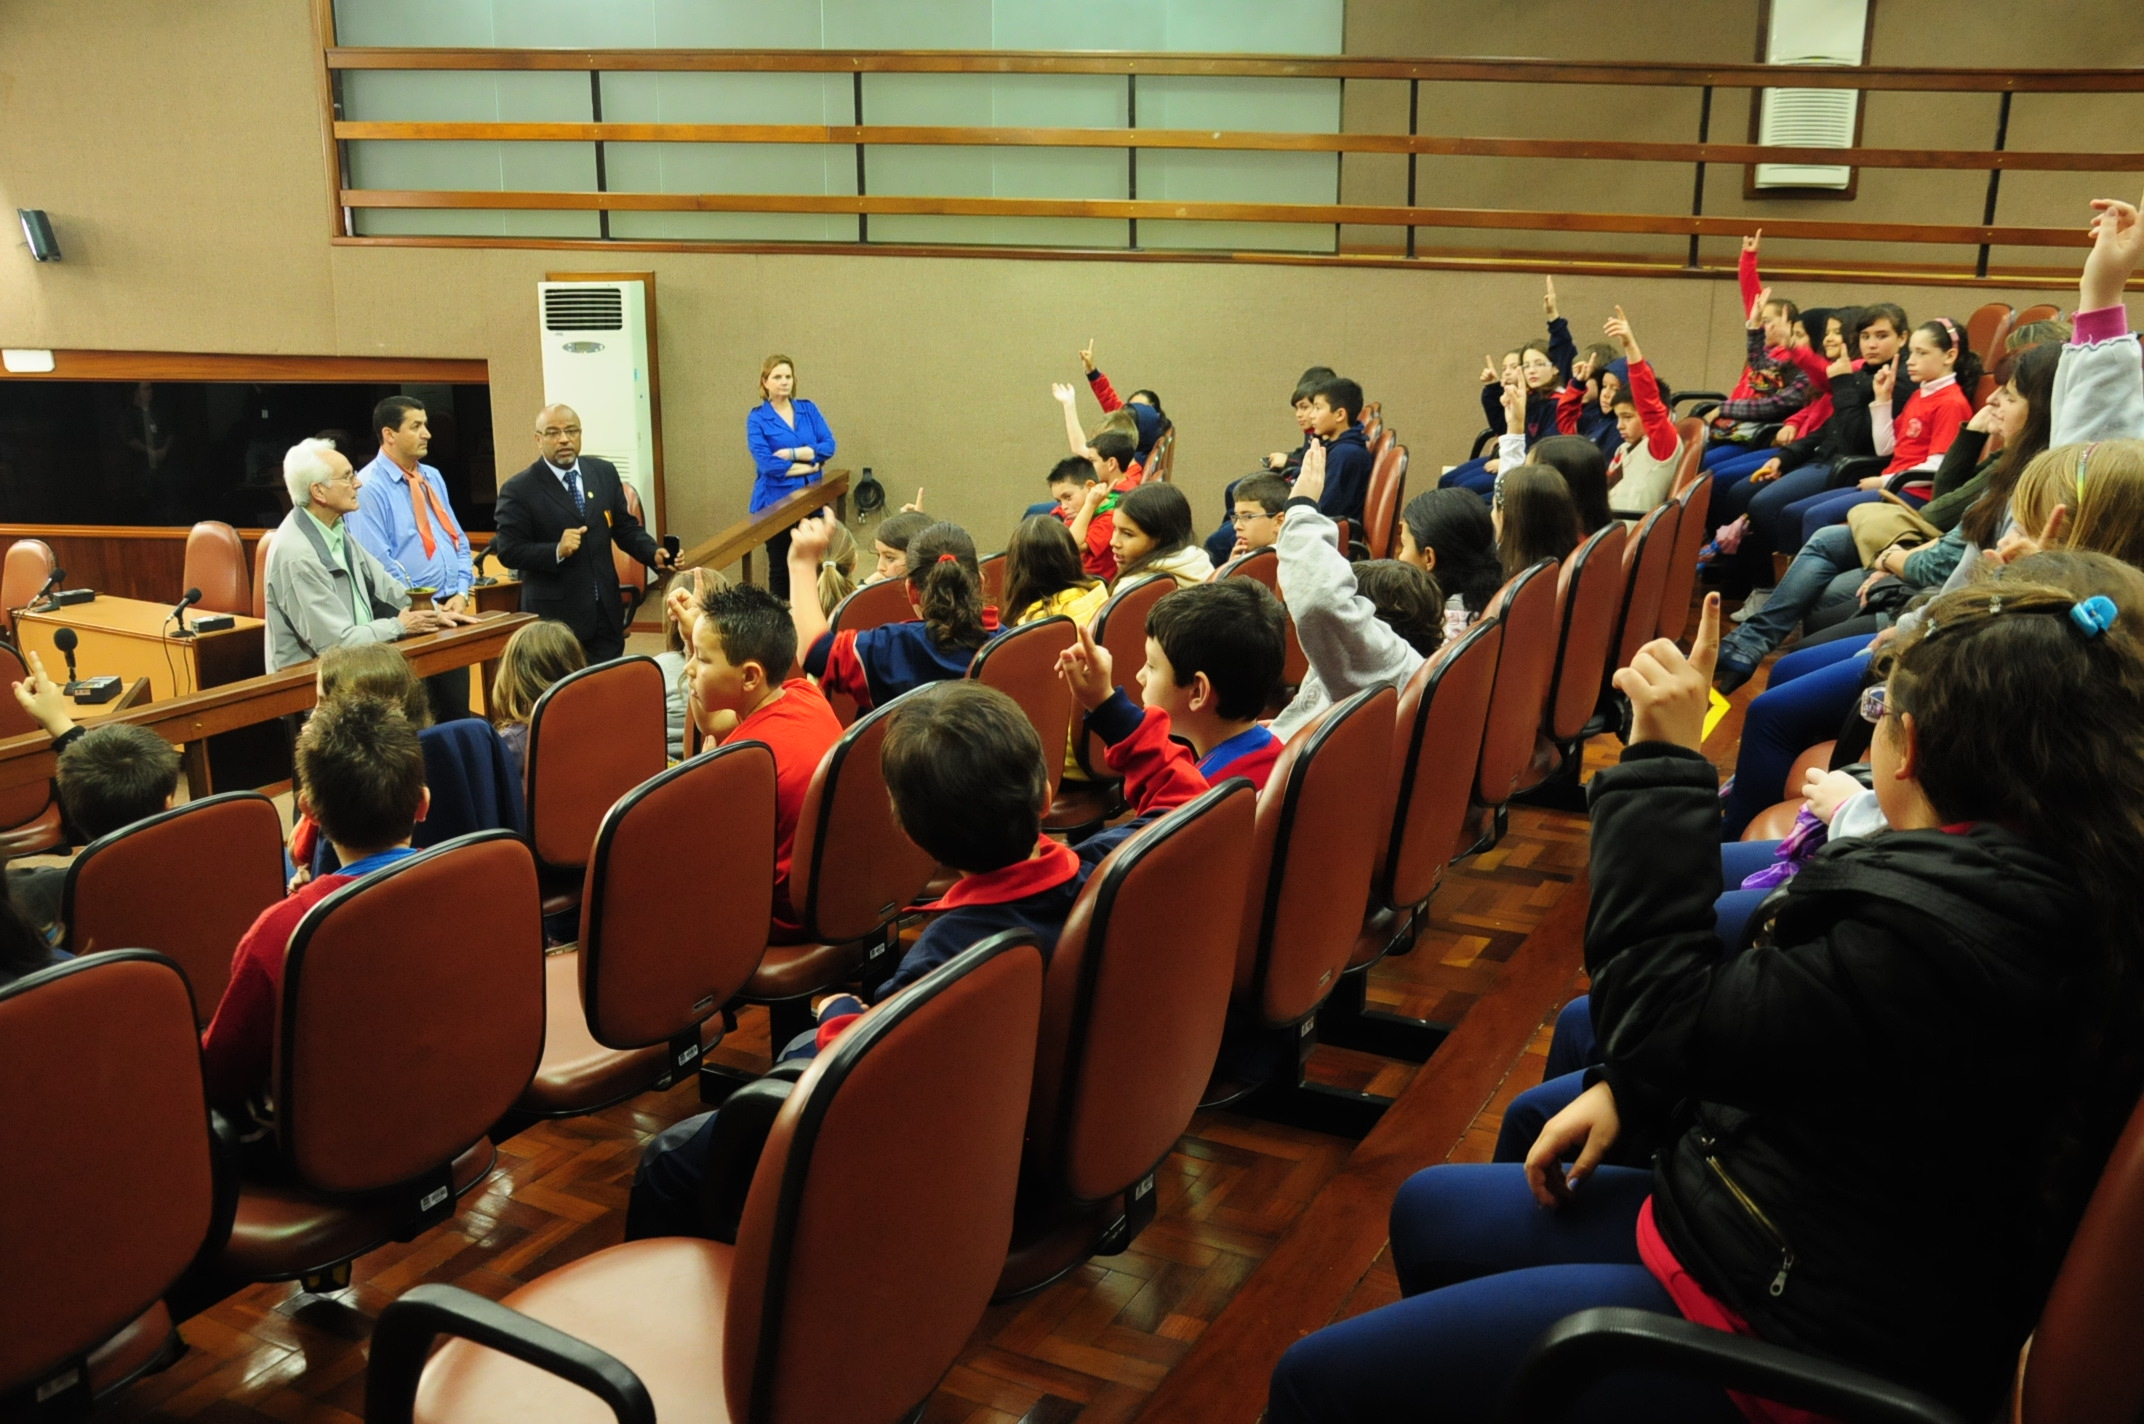 Palestra sobre o movimento tradicionalista reúne 45 alunos no plenário da Câmara